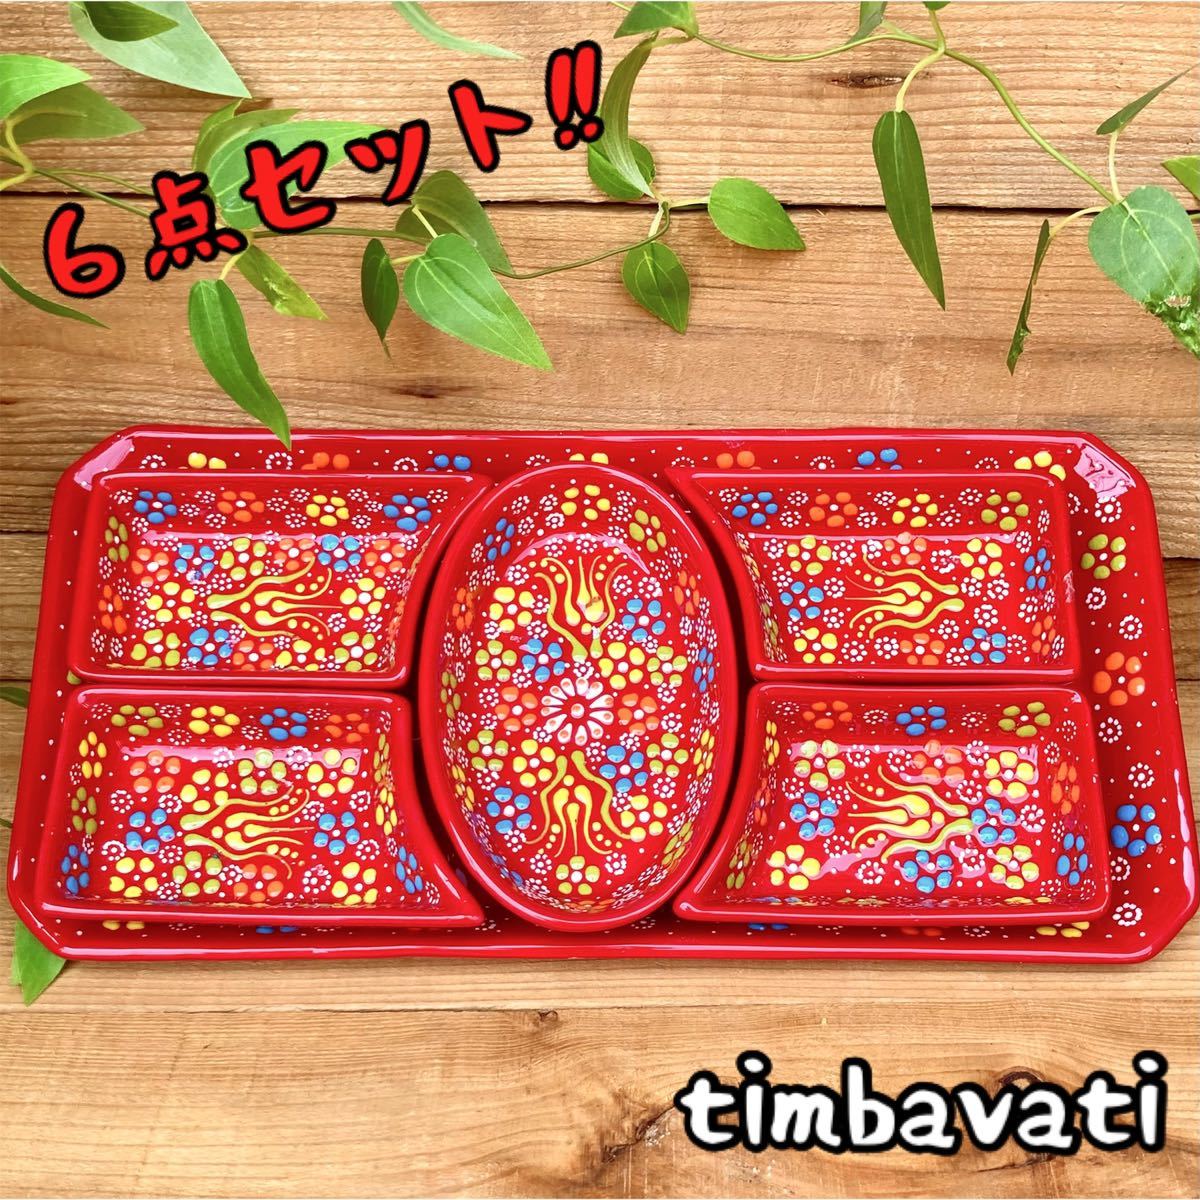 Juego de 6 piezas ☆Nuevo☆Juego de vajilla de cerámica turca y plato para servir*Rojo* Cerámica Kyutafya hecha a mano 070, vajilla occidental, lámina, plato, otros